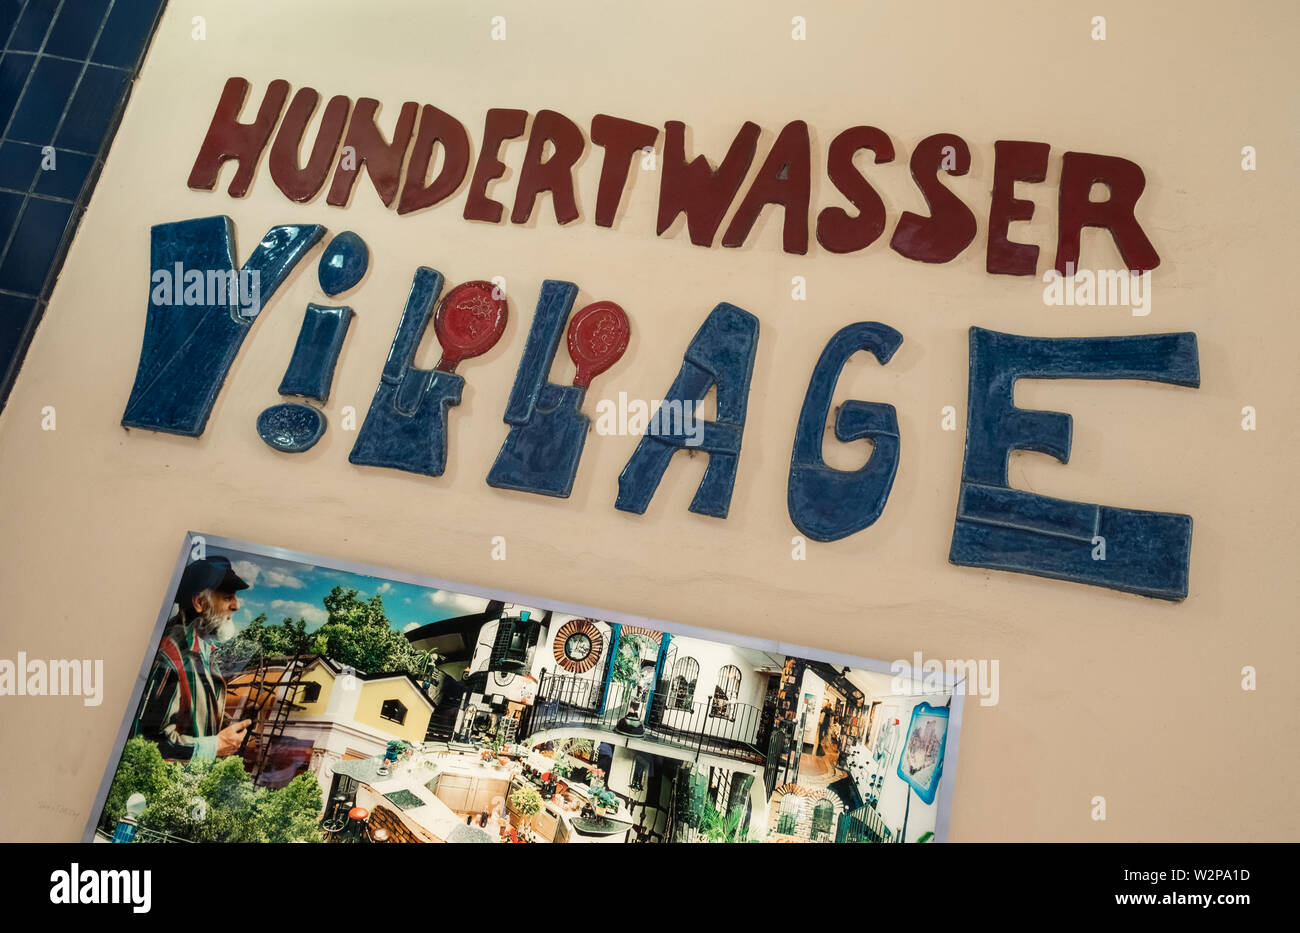 Hundertwasserhaus, designed by architect Friedensreich Hundertwasser (a pseudonym), a local landmark and tourist attraction, Vienna, Austria. Stock Photo